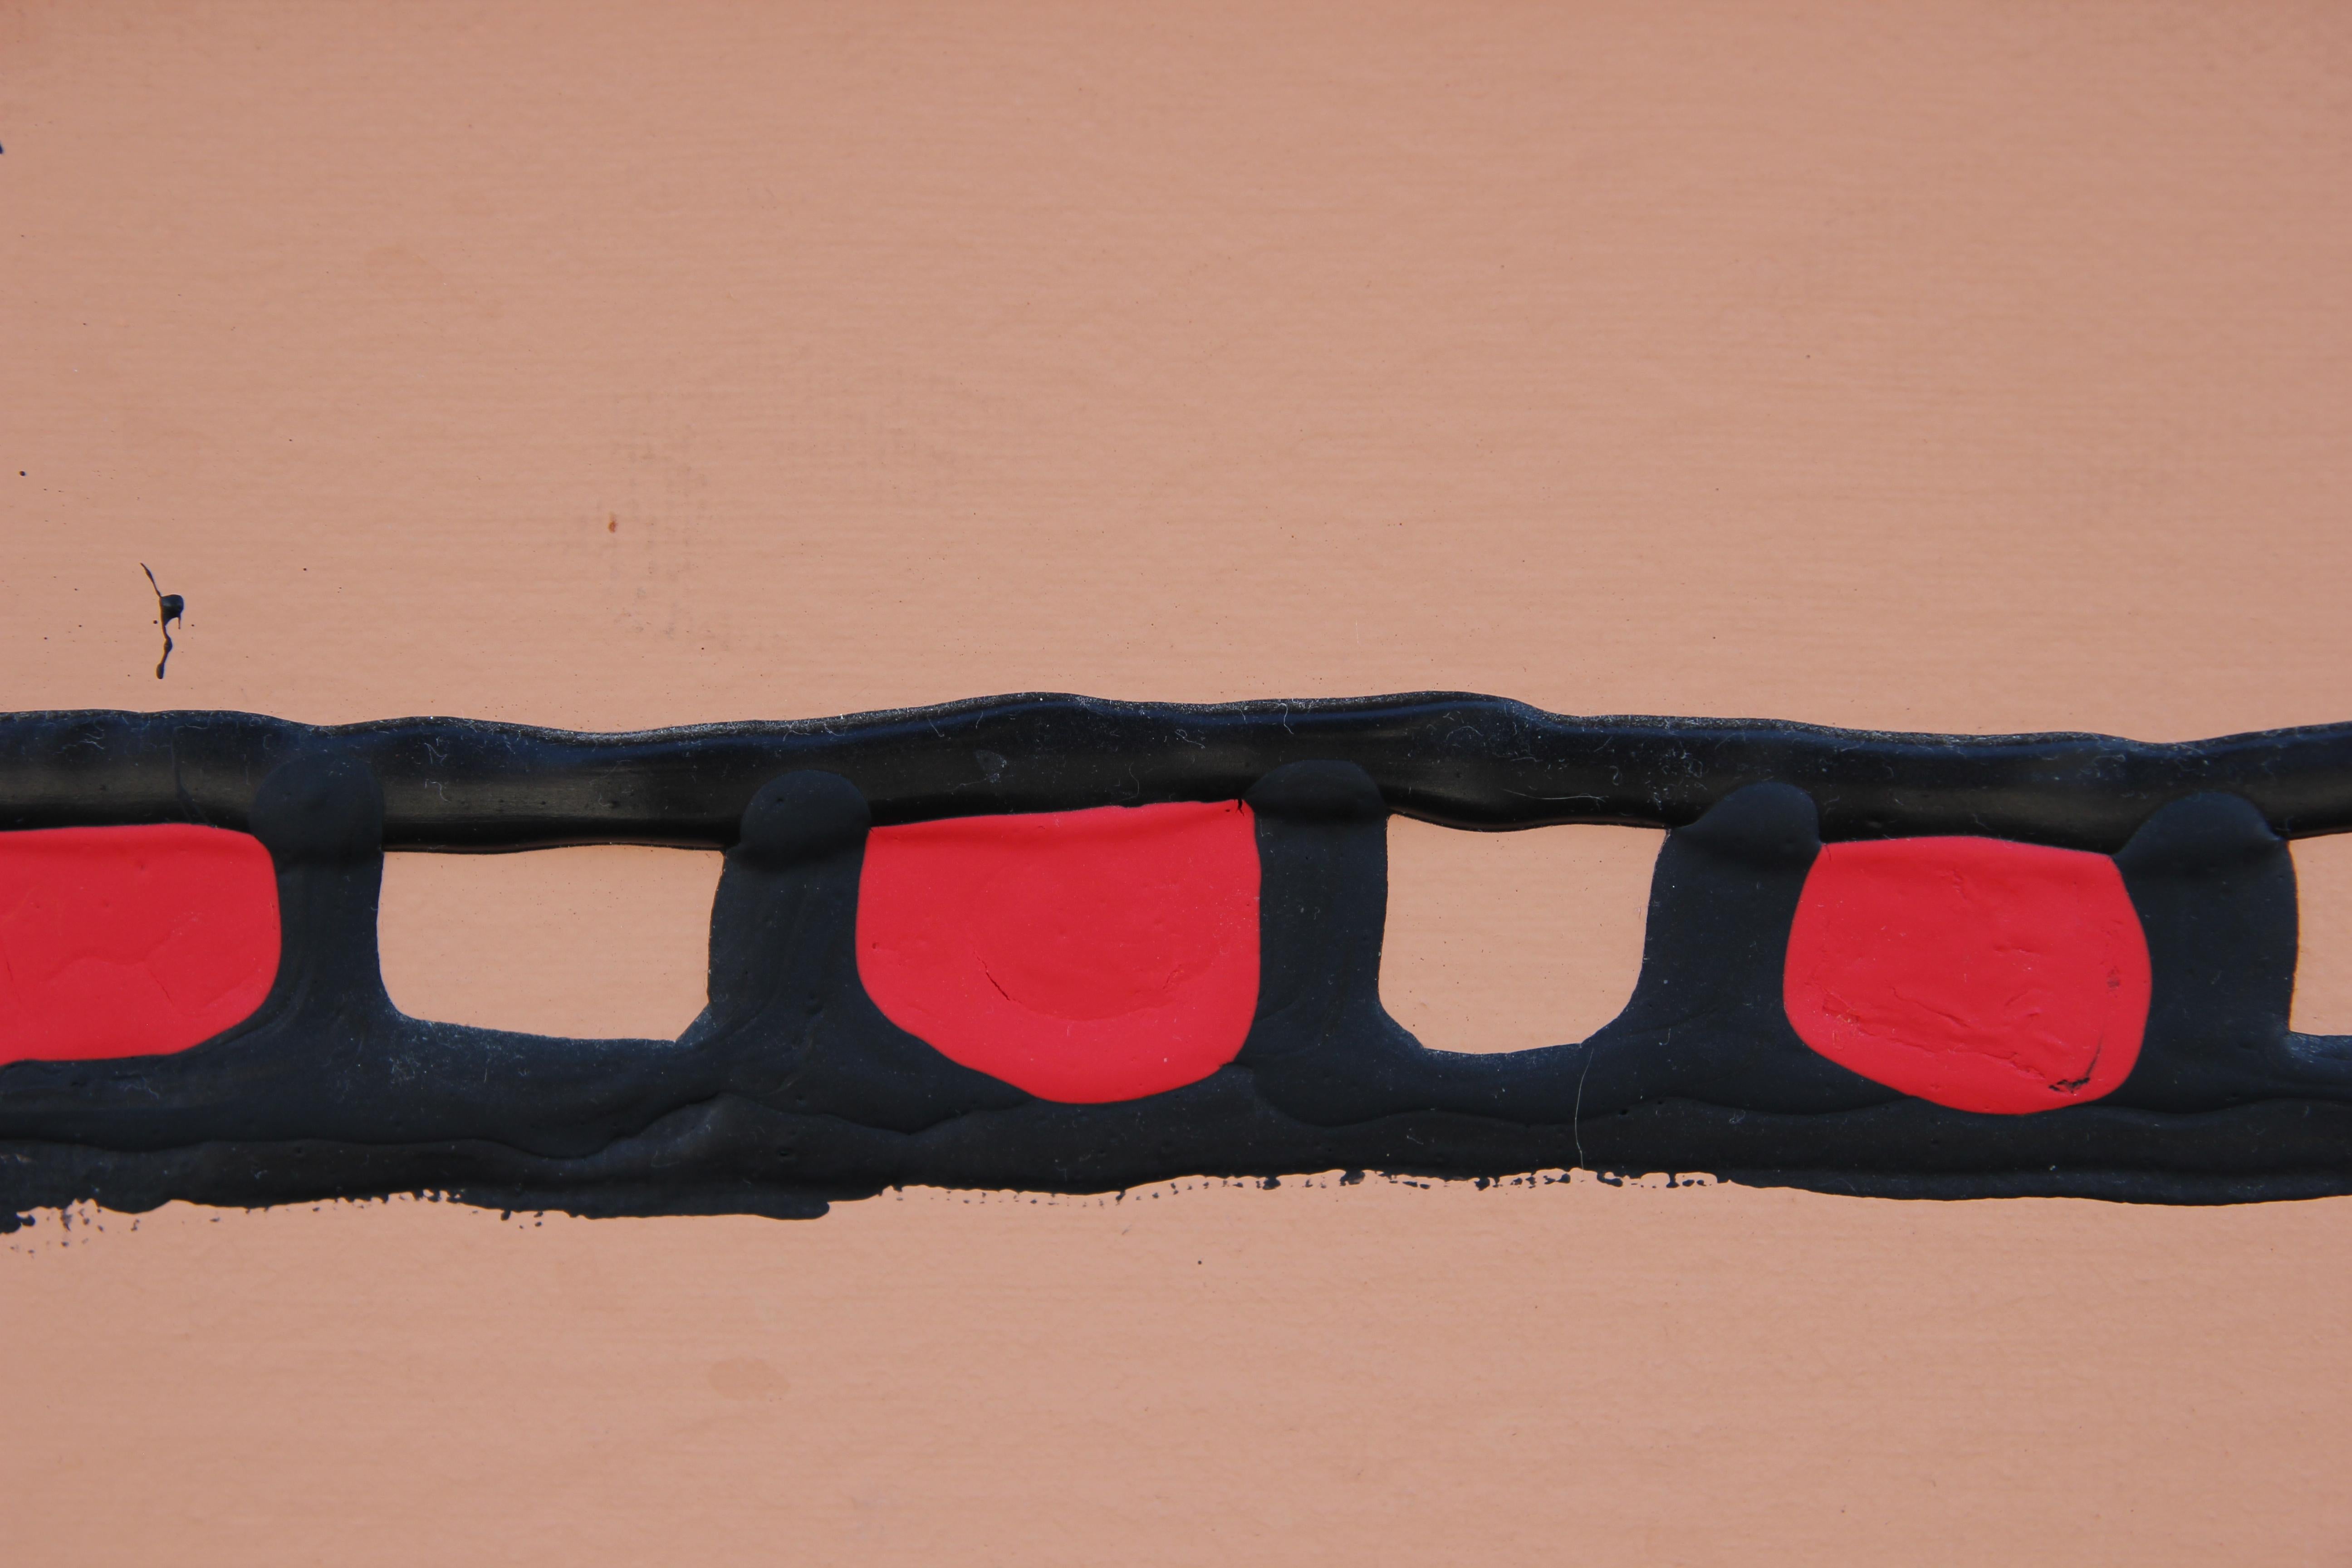 Schwarzes und pfirsichfarbenes abstraktes Gemälde mit einem zertrümmerten Spielzeugauto auf der Oberfläche der Leinwand. Das Werk ist in der unteren Ecke vom Künstler signiert. Die Leinwand ist in einen goldenen Rahmen eingefasst.
Abmessungen ohne